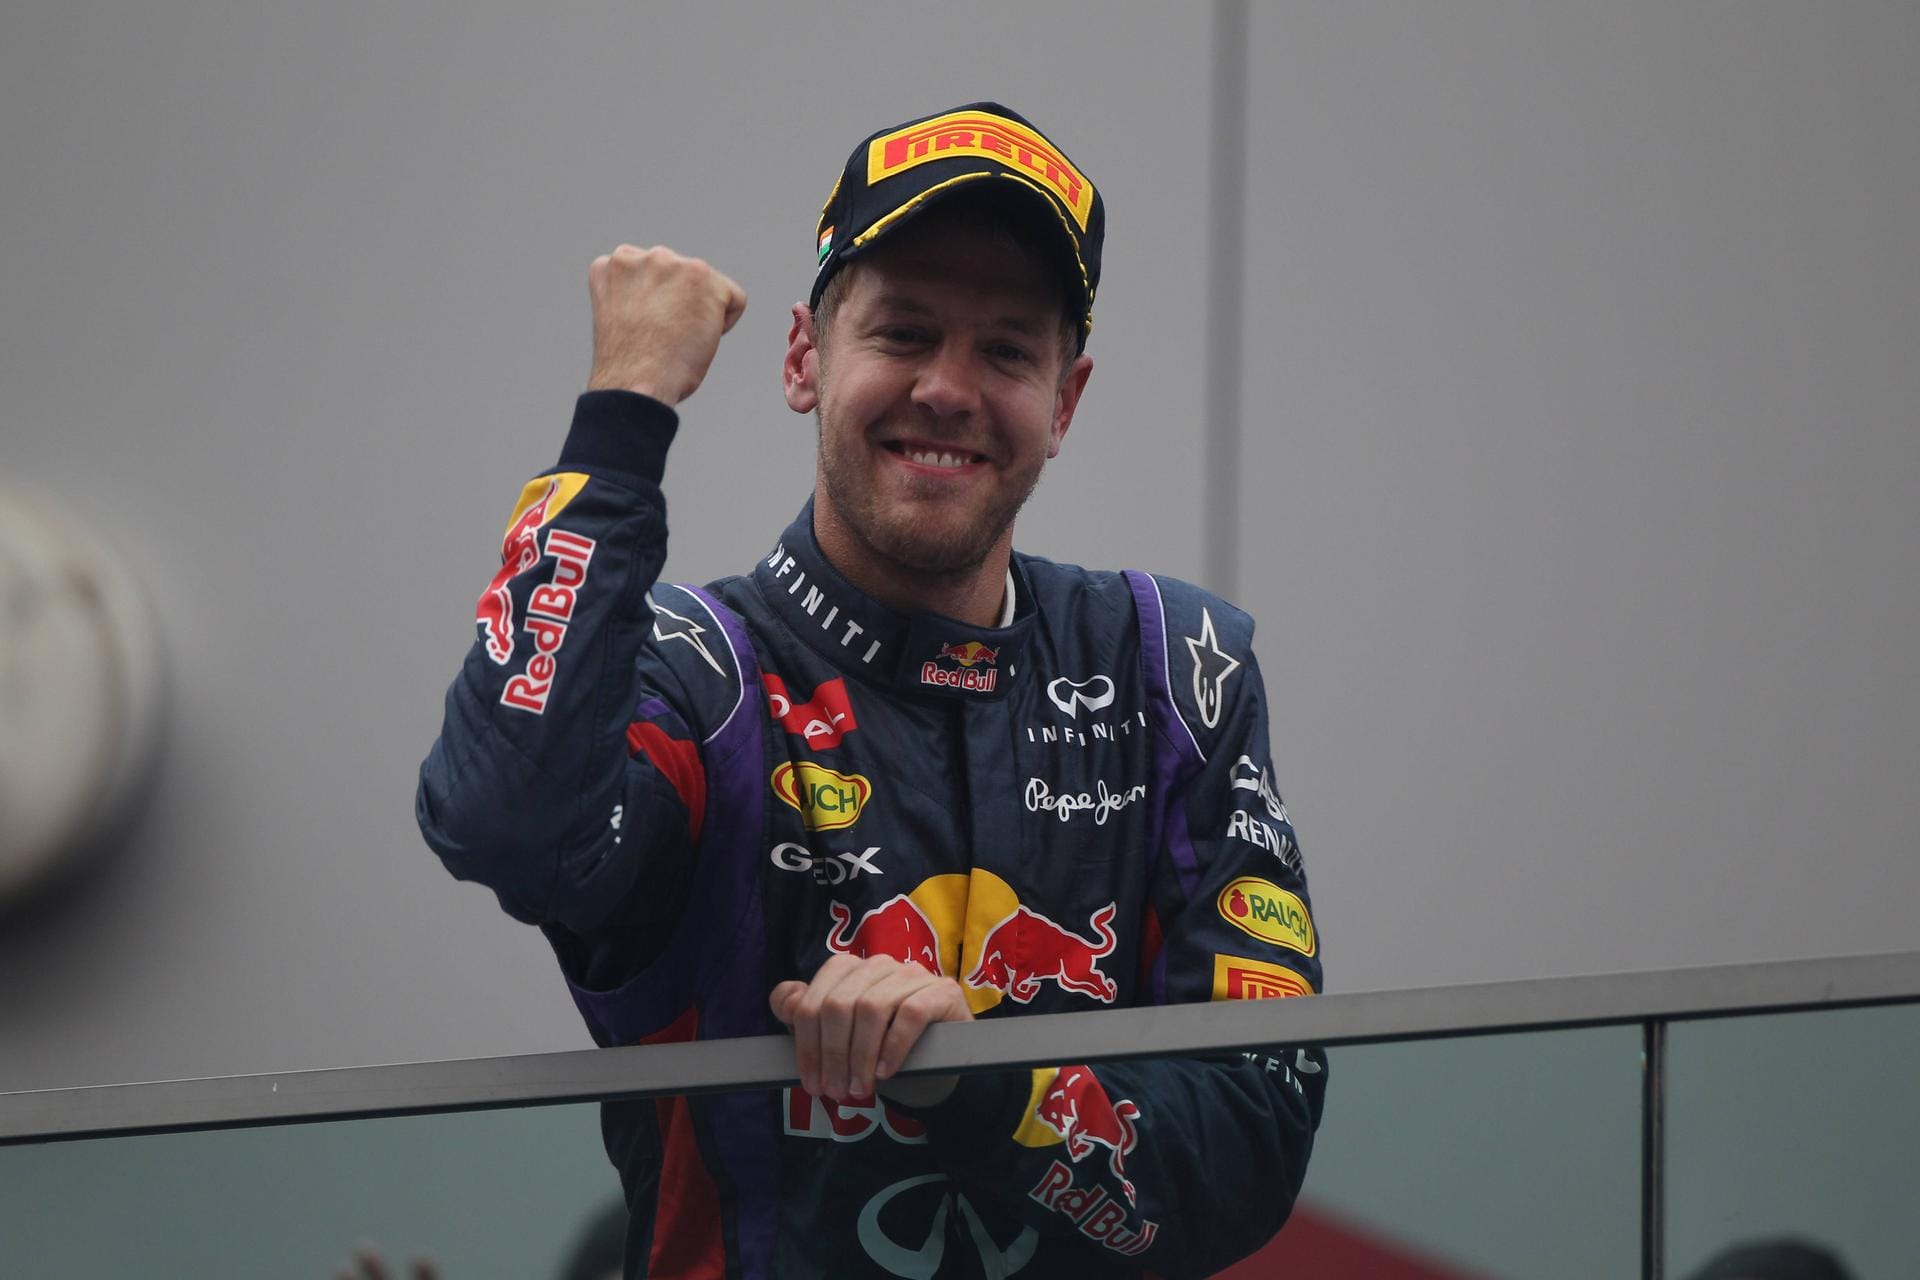 Nach seinem verpassten Titel im Vorjahr 2009 gewann der Heppenheimer Sebastian Vettel im Red Bull 2010 seinen ersten Titel. Auch in den Folgejahren dominierte der Deutsche die Formel 1 – und wurde deshalb (und aufgrund seines kindlichen Gesichts) „Baby-Schumi“ von der Presse getauft. Mit seinem Teamkollegen Mark Webber holte er zudem vier Mal den Konstrukteurstitel.